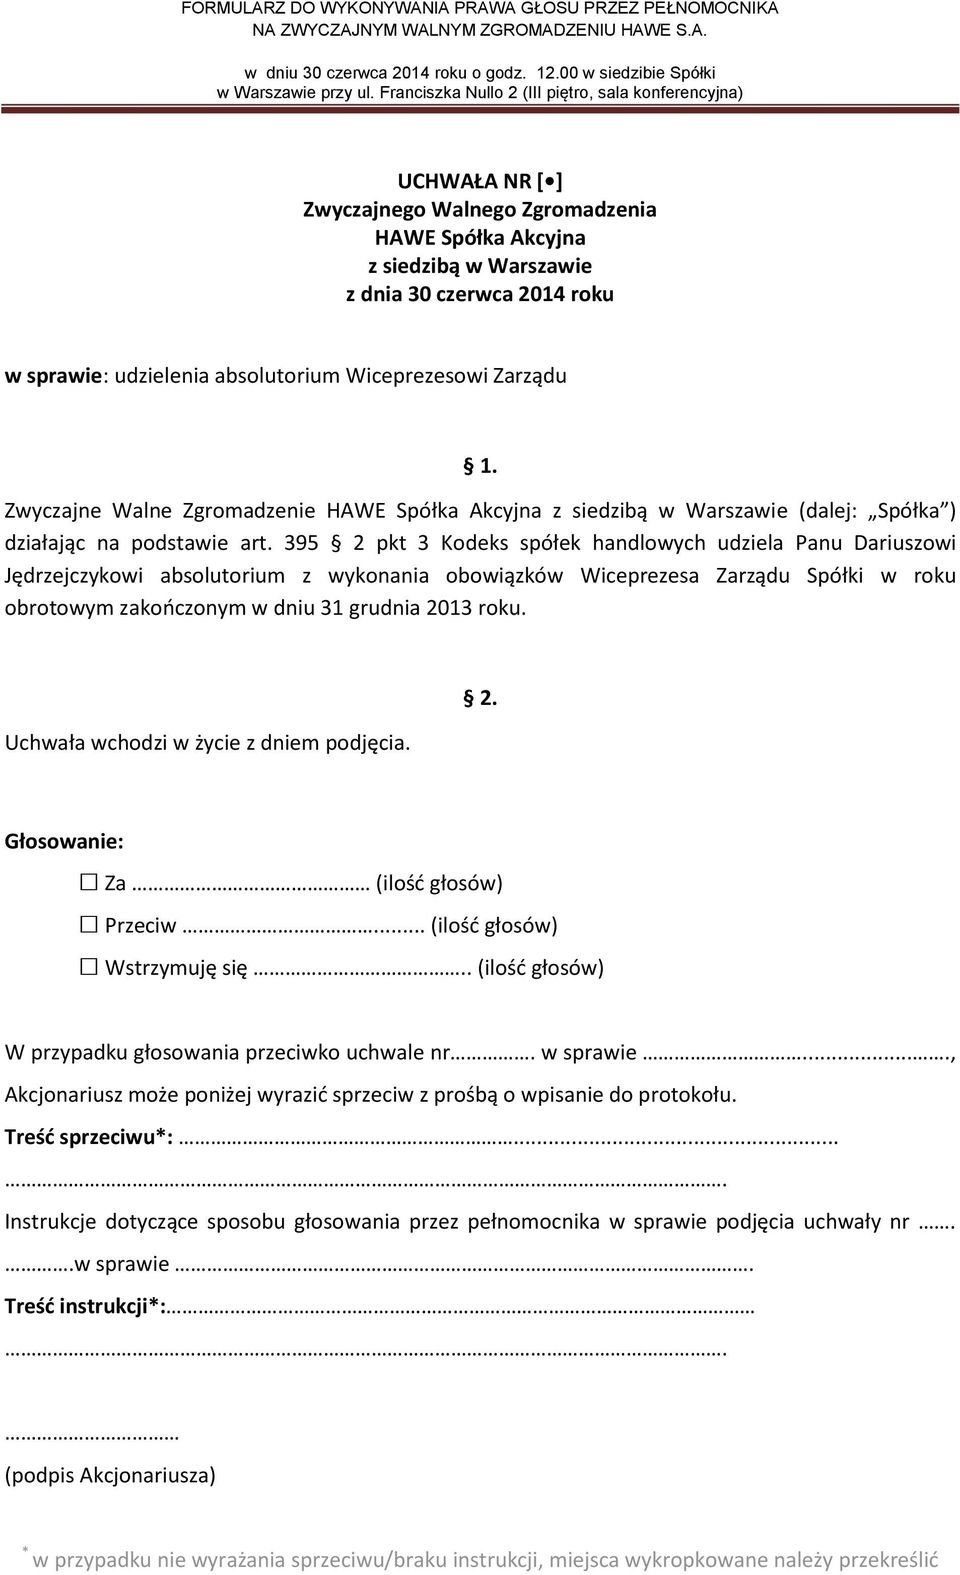 395 2 pkt 3 Kodeks spółek handlowych udziela Panu Dariuszowi Jędrzejczykowi absolutorium z wykonania obowiązków